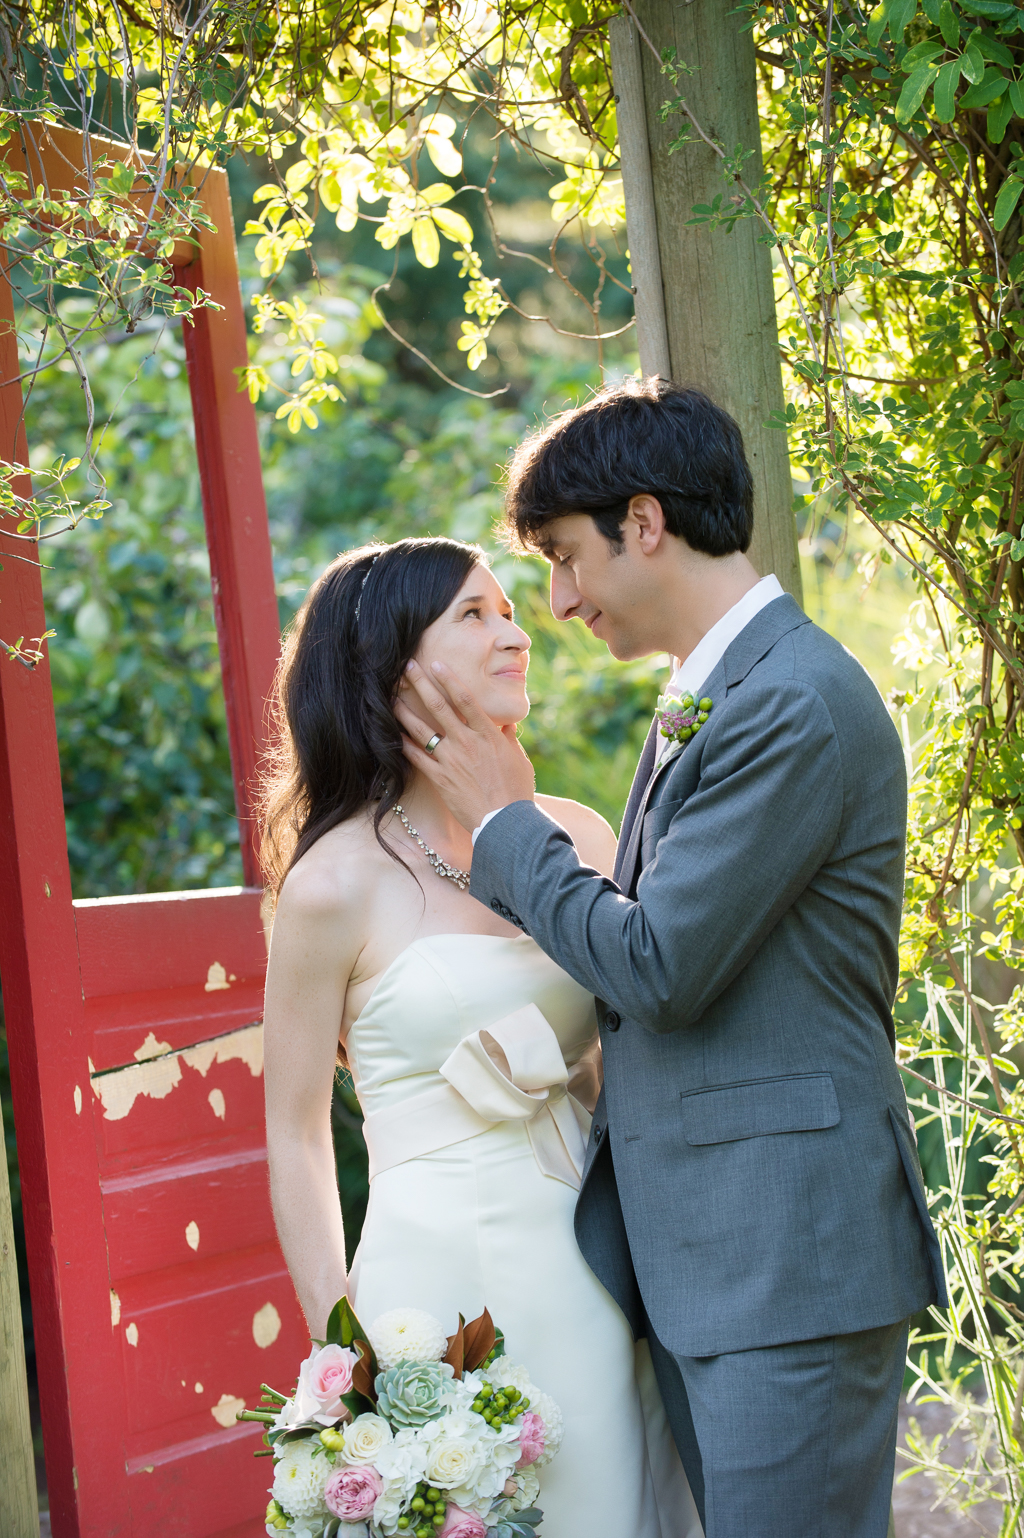 groom caresses bride's cheek in garden with red door at edgefield